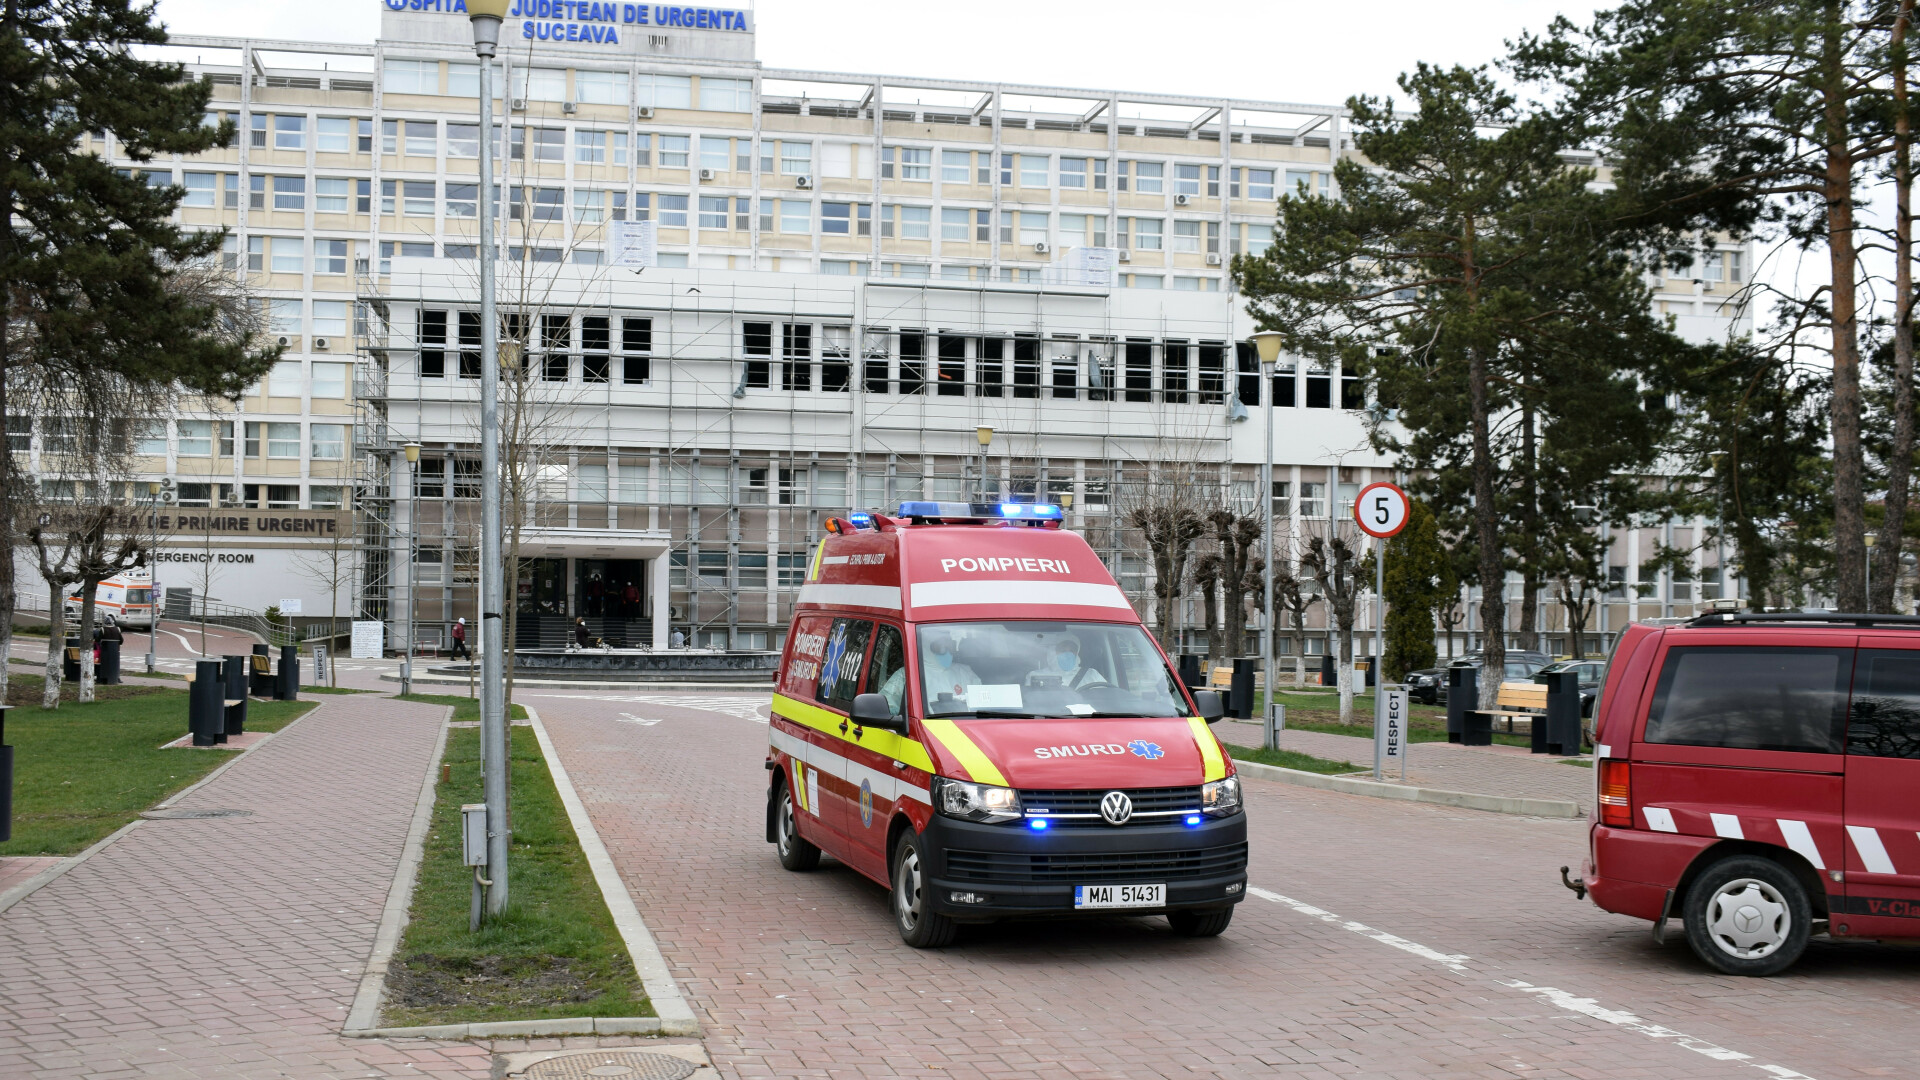 Spitalului Judeţean de Urgenţă Suceava